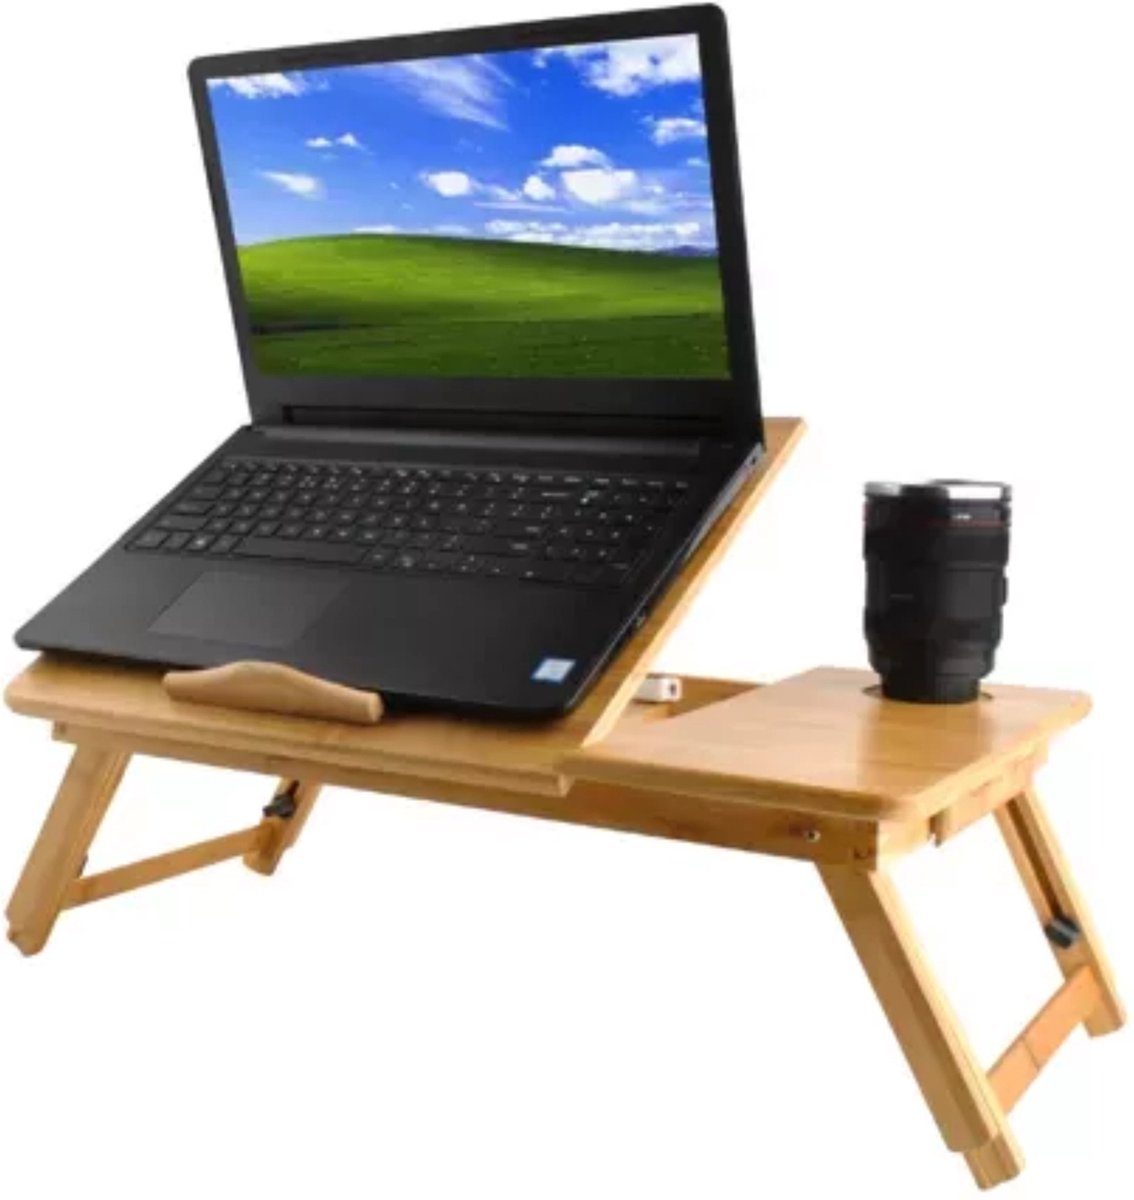 Ruhhy Bamboe Laptopstandaard - Perfec voor Ergonomisch Werken - Voor Laptops tot 17 inch